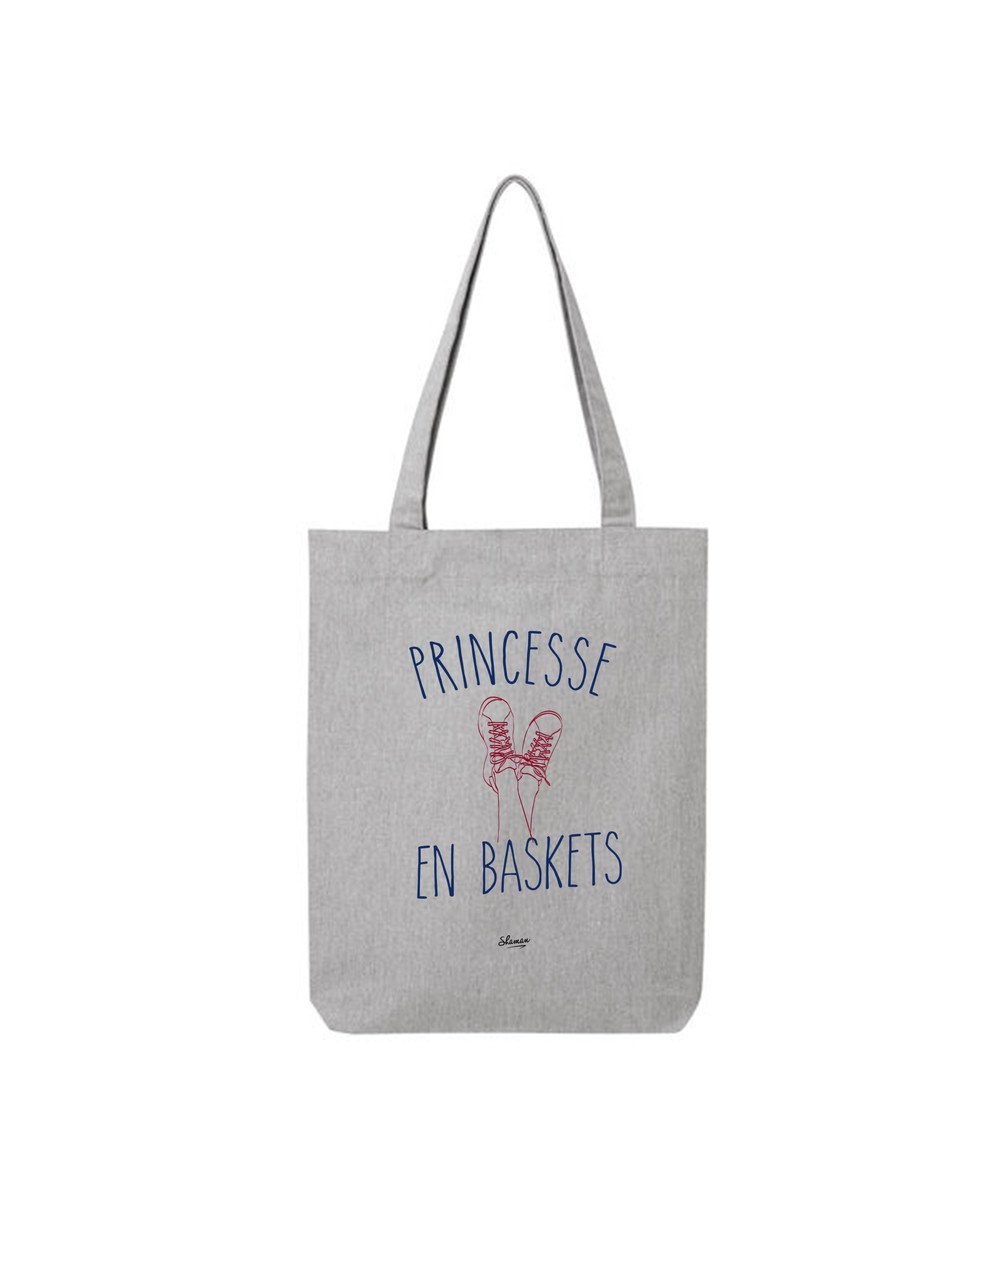 Tote Bag "Princesse"